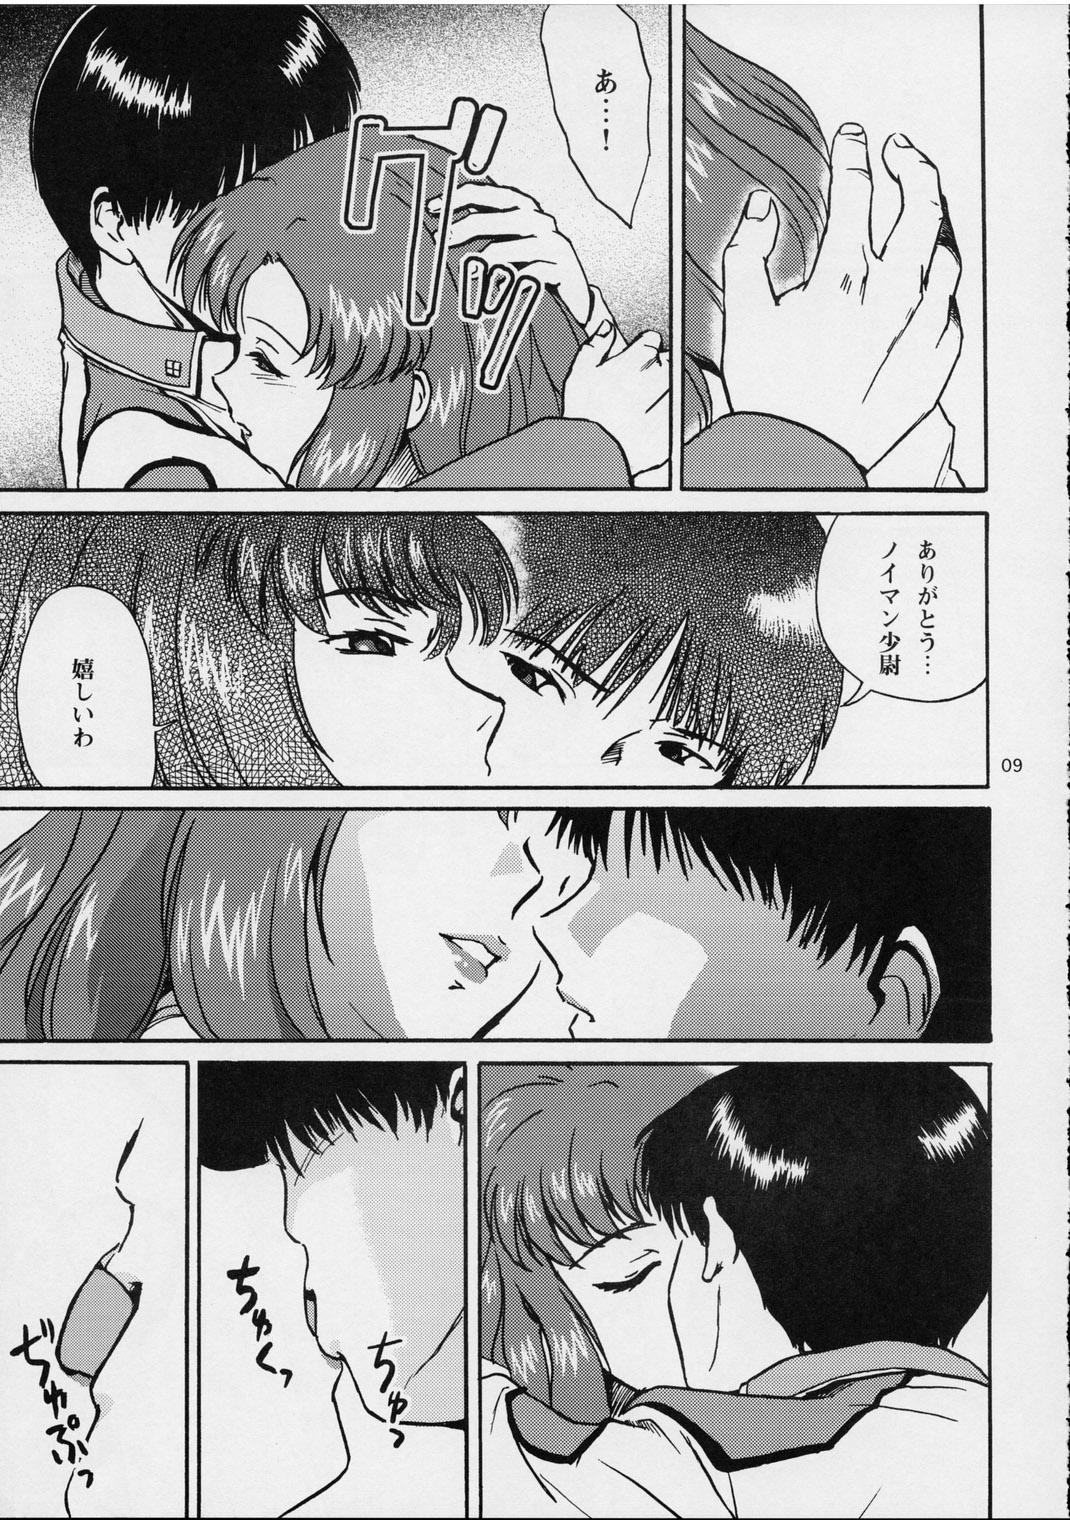 Step Ark Angel - Gundam seed Morrita - Page 9